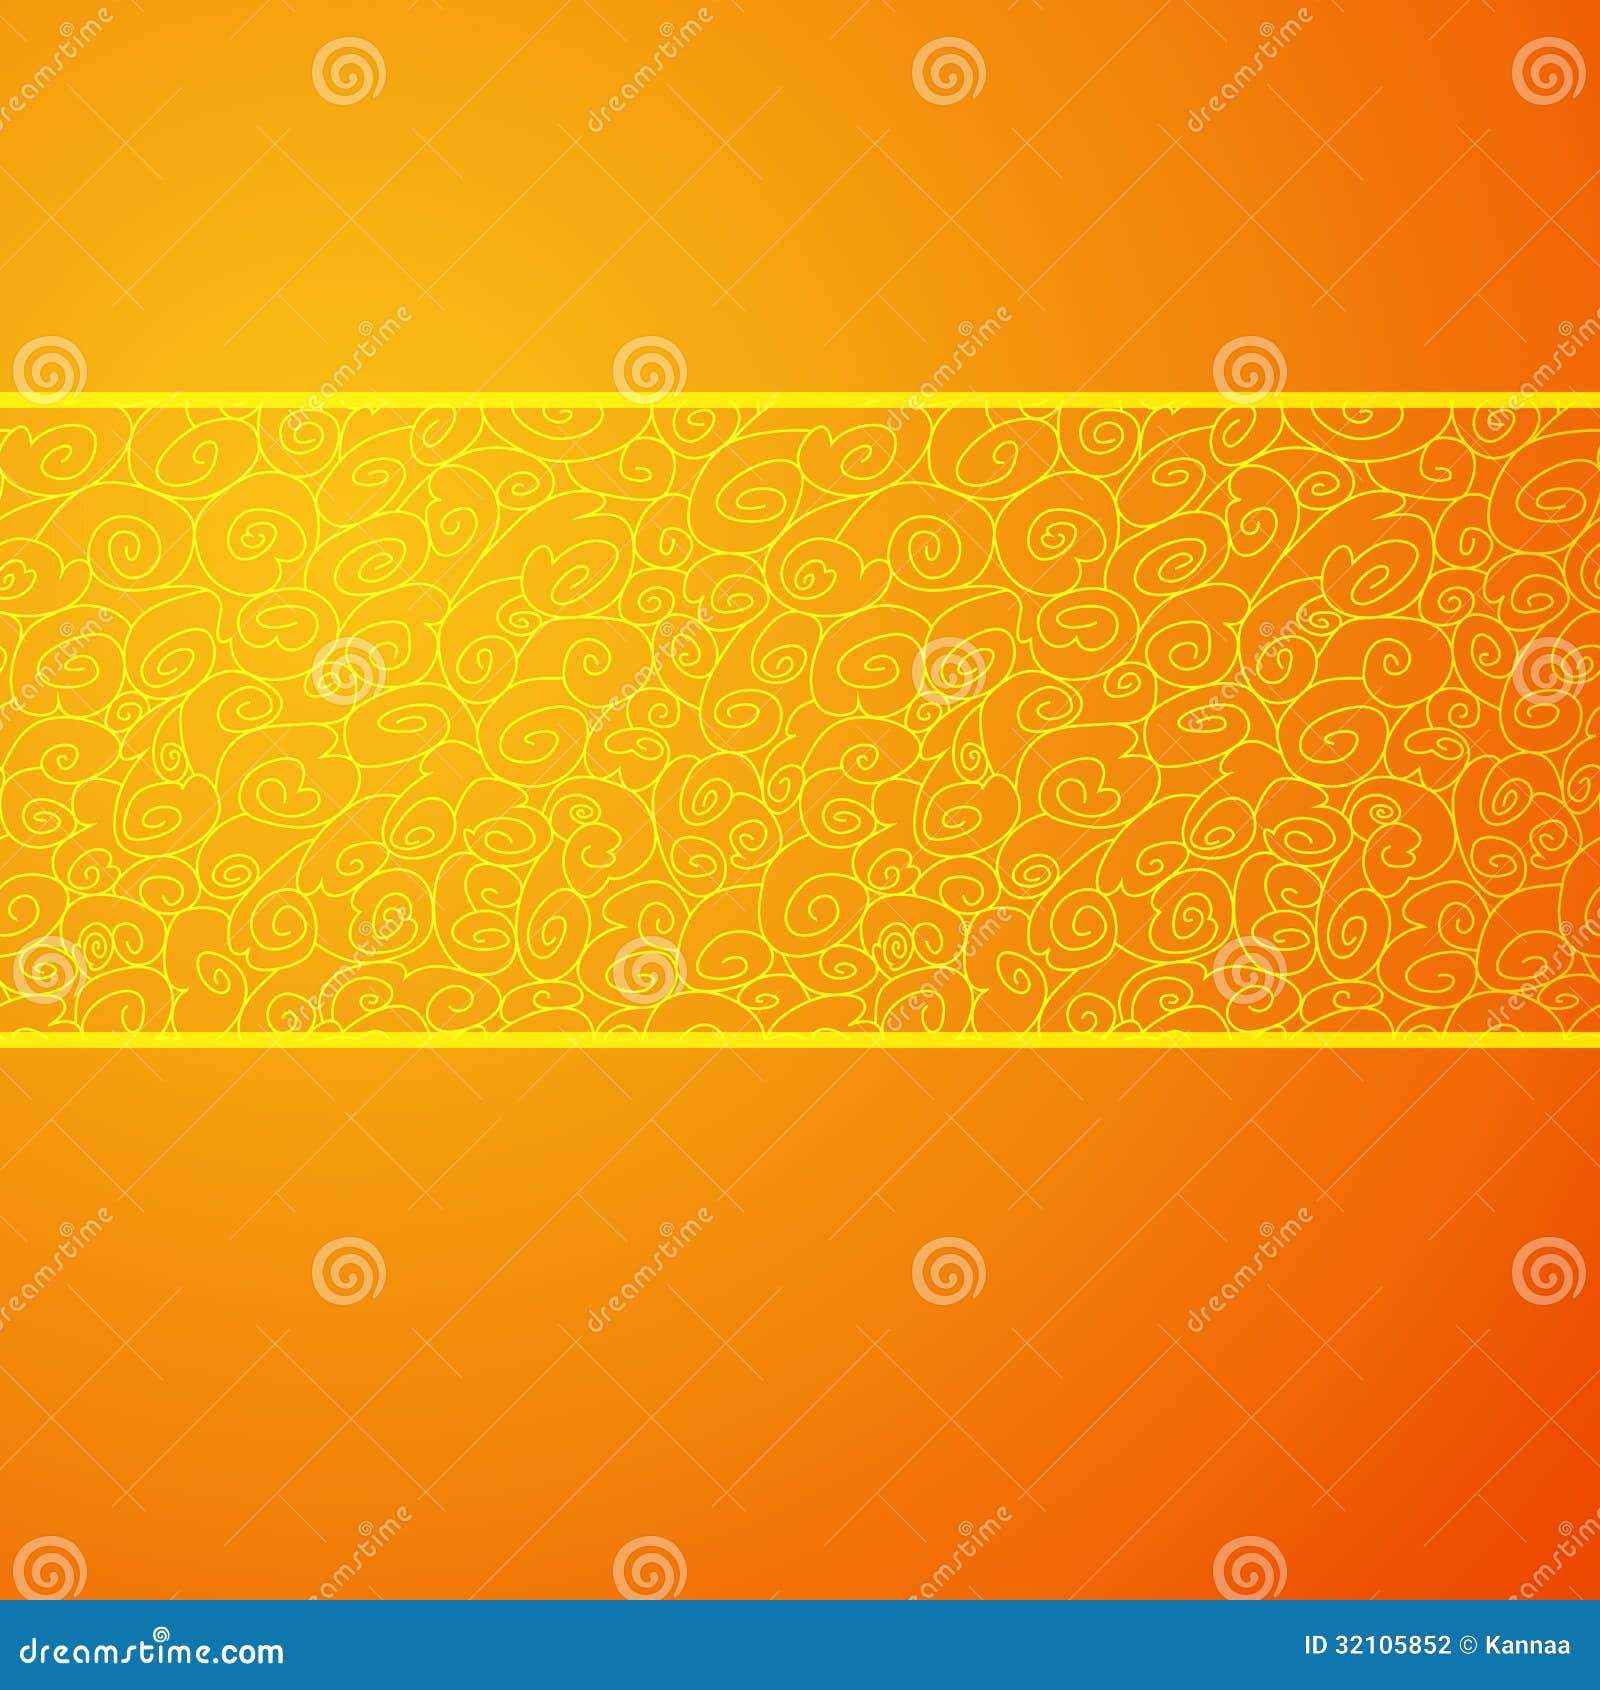 Orange Wave: Những cơn sóng cam của biển cả, khát khao tự do và động lực không ngừng, đây là những gì bạn cảm nhận được khi ngắm nhìn hình ảnh của chúng tôi. Màu sắc đậm chất cam sẽ mang đến sự ấn tượng tuyệt vời cho trải nghiệm của bạn.